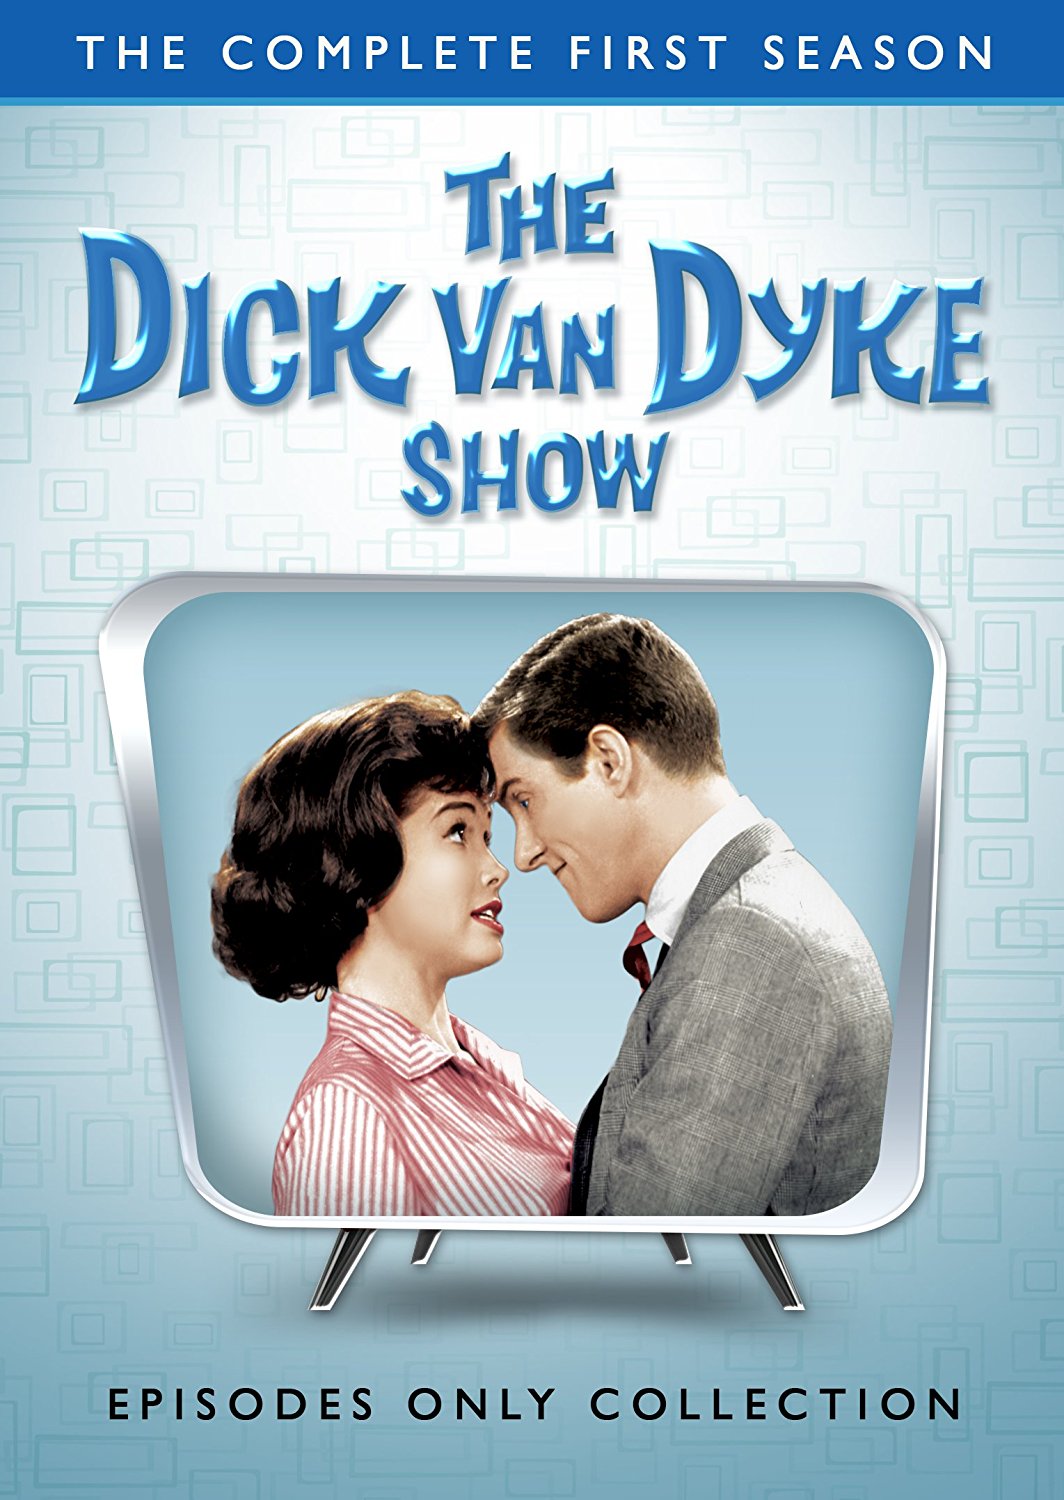 Dick van dyke episodes ranked